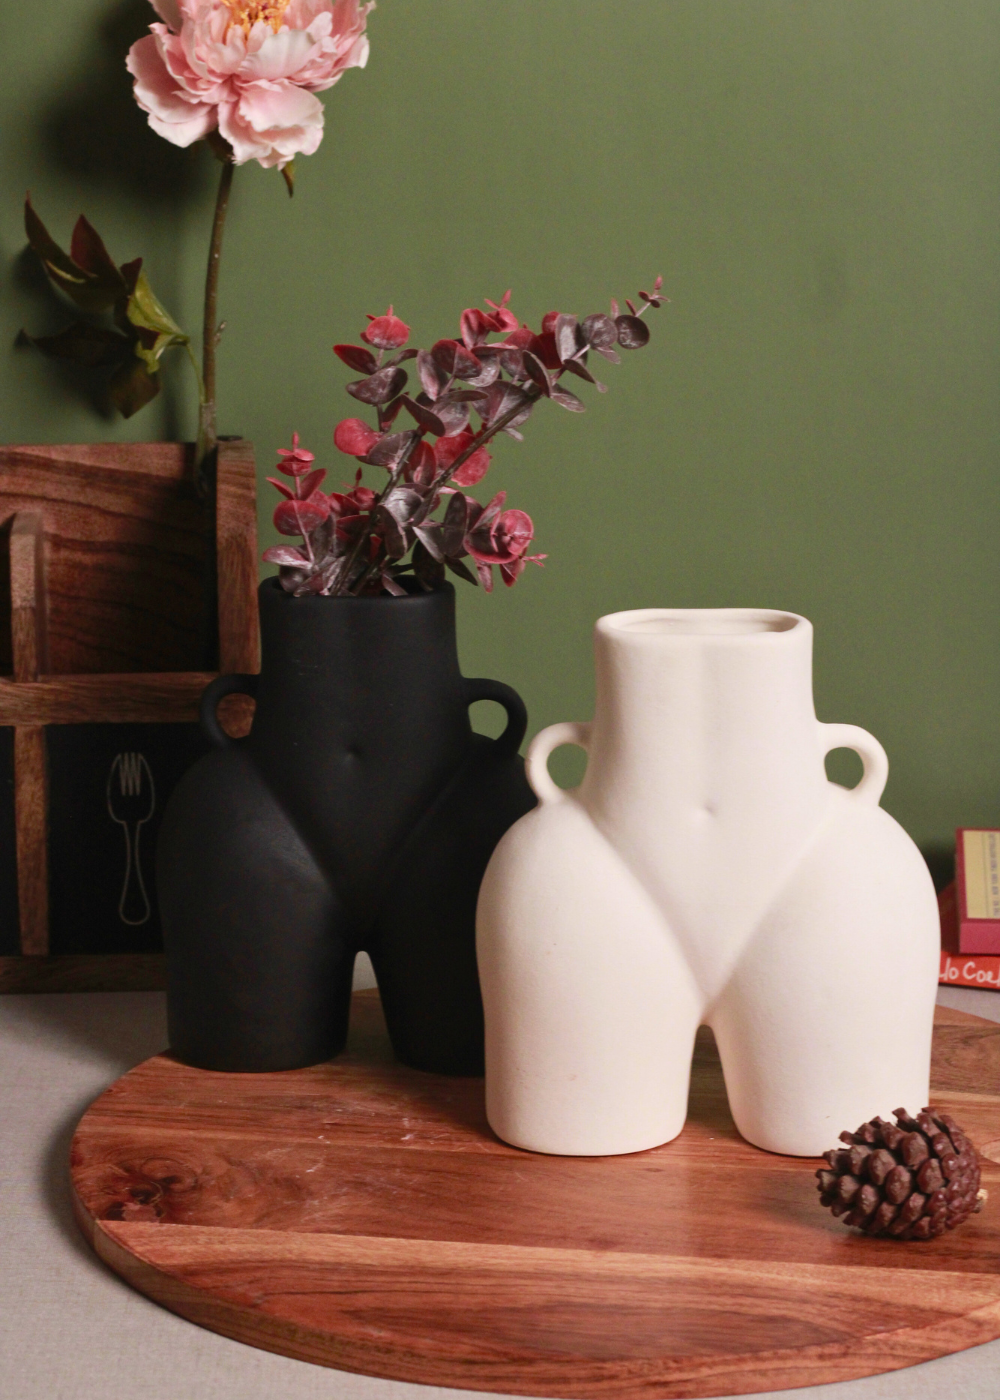 handmade black & white body vase set of two combo